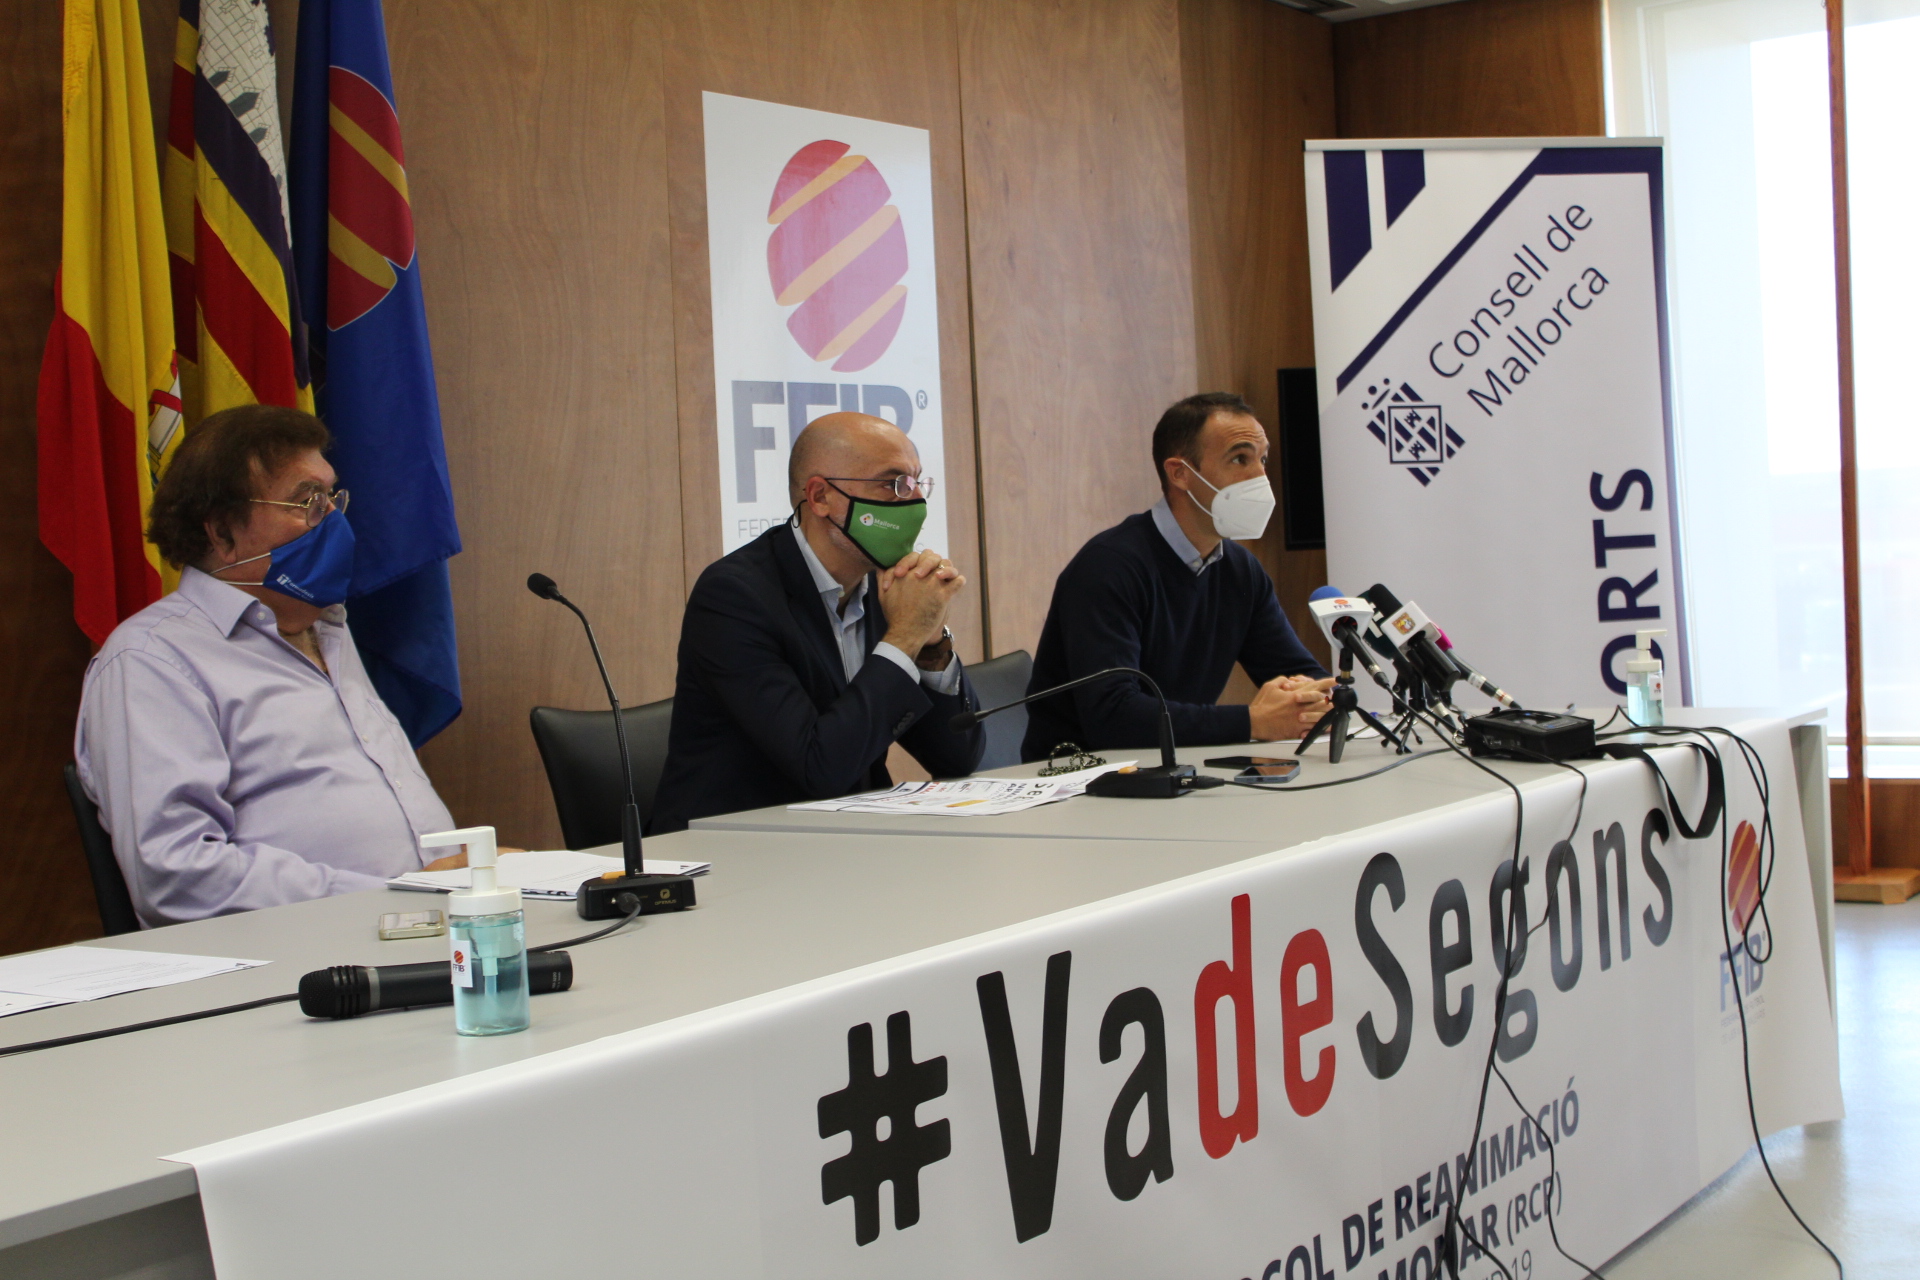 Presentació de la campanya #VadeSegons.